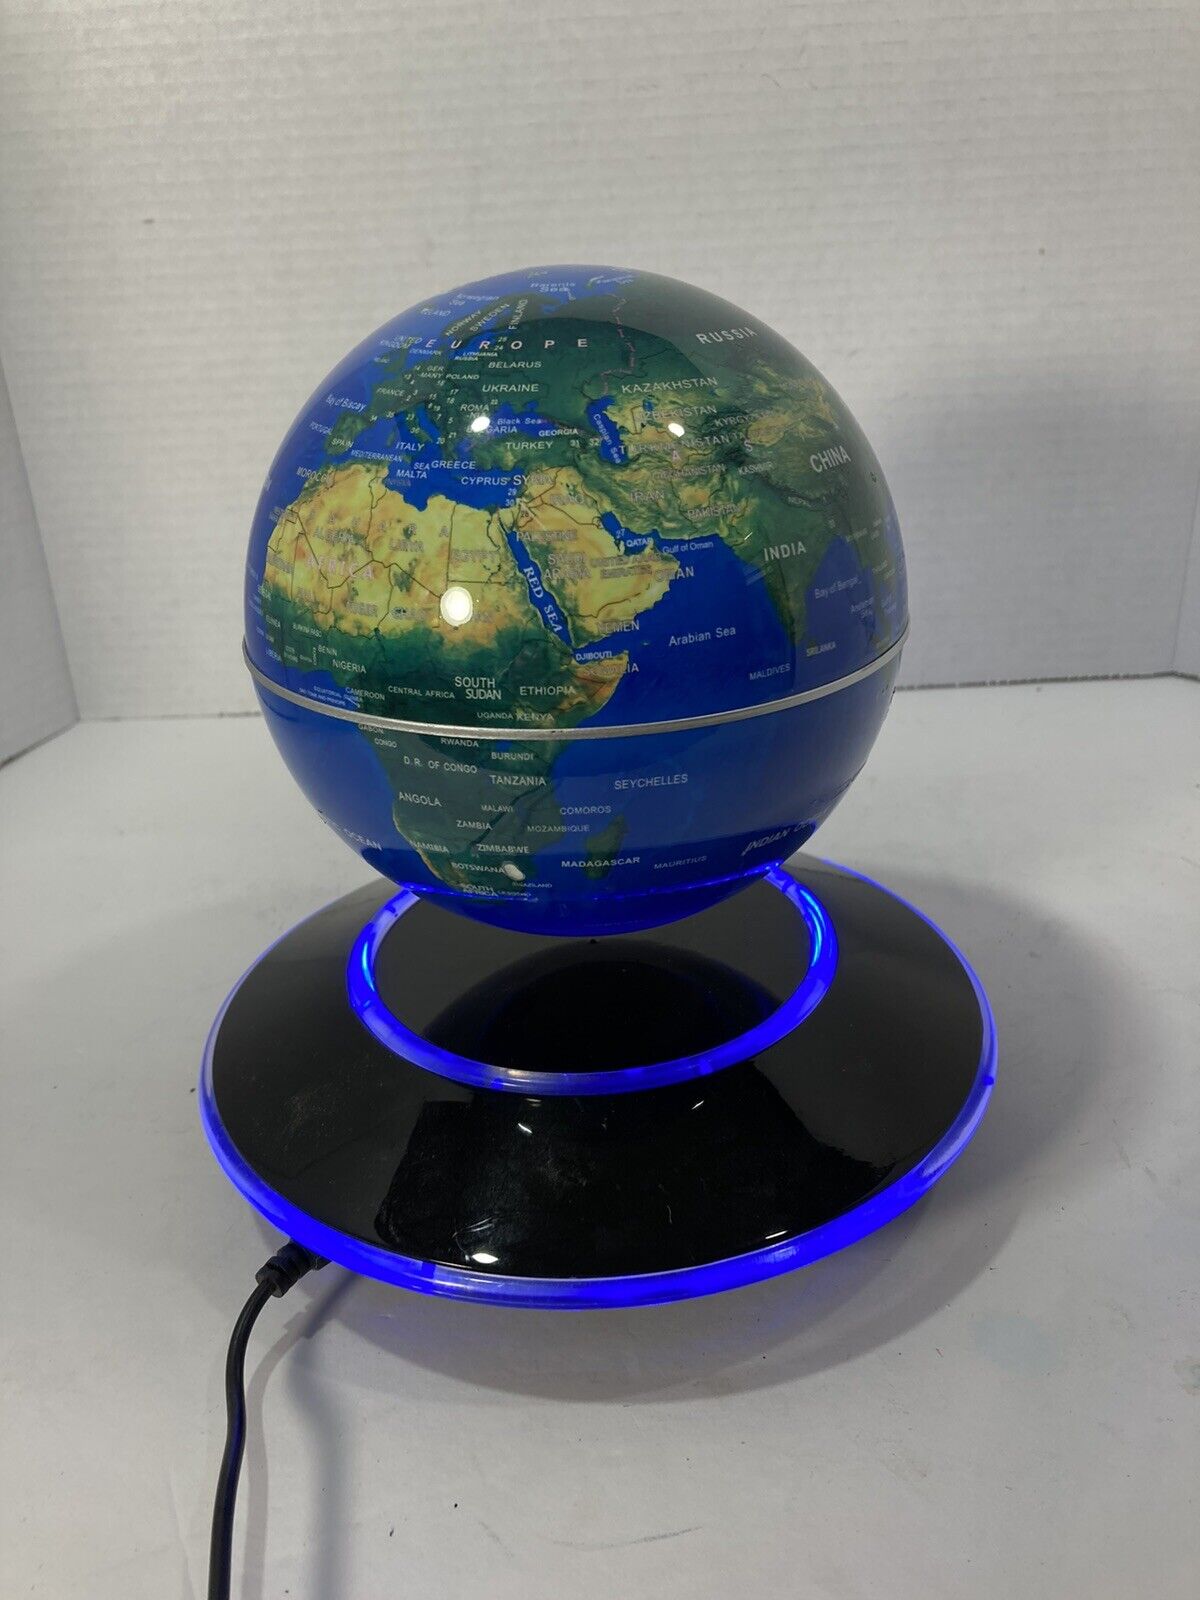 Magnetic Levitating Floating Rotating World Globe-6” -Colorful-I